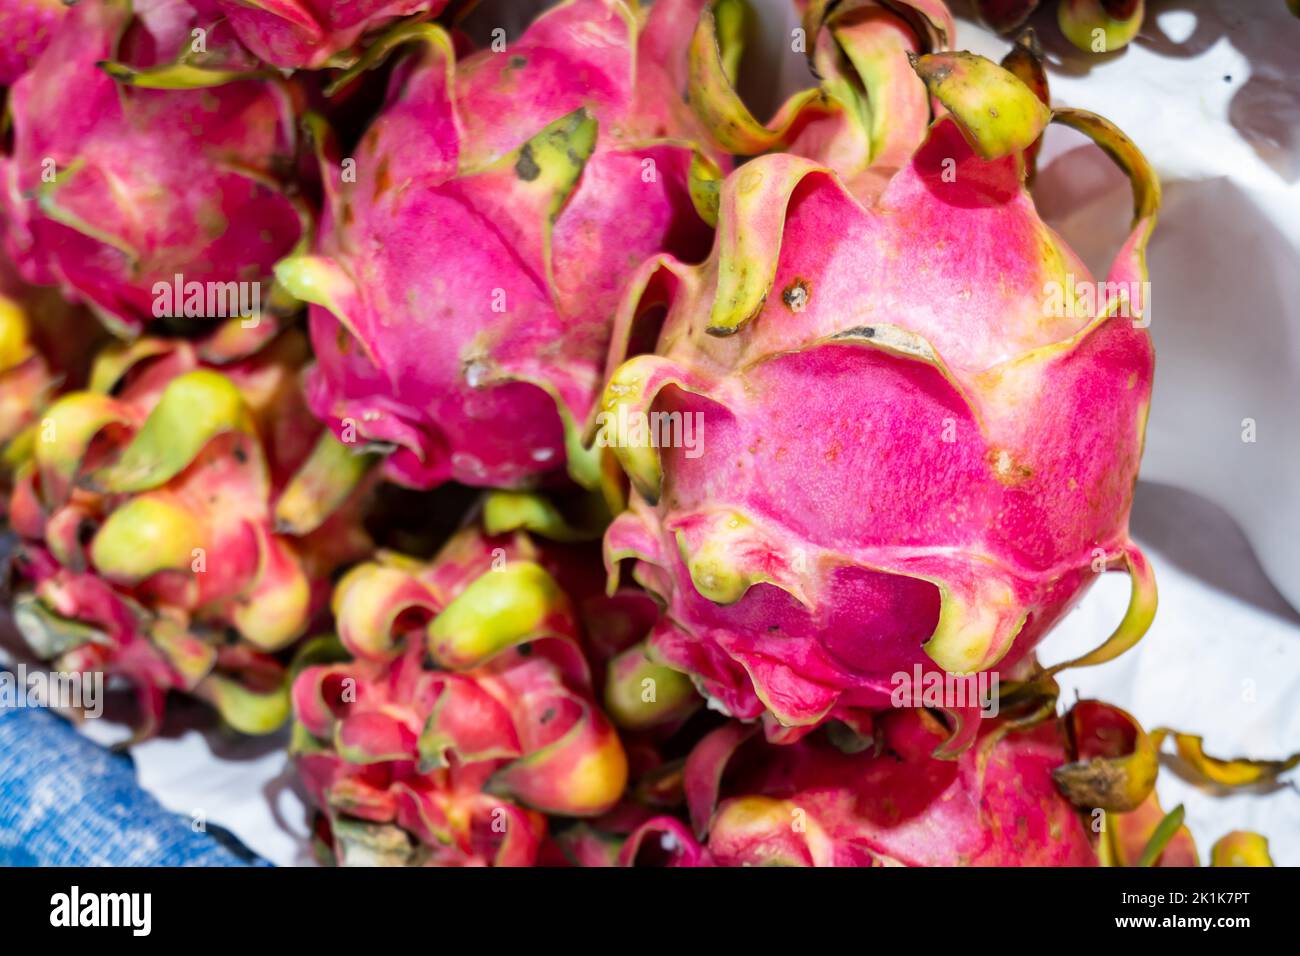 Frutti di drago, primo piano di frutta fresca drago sul mercato. Closeup di frutta tropicale matura. Mercato asiatico della frutta stallo in Thailandia Foto Stock